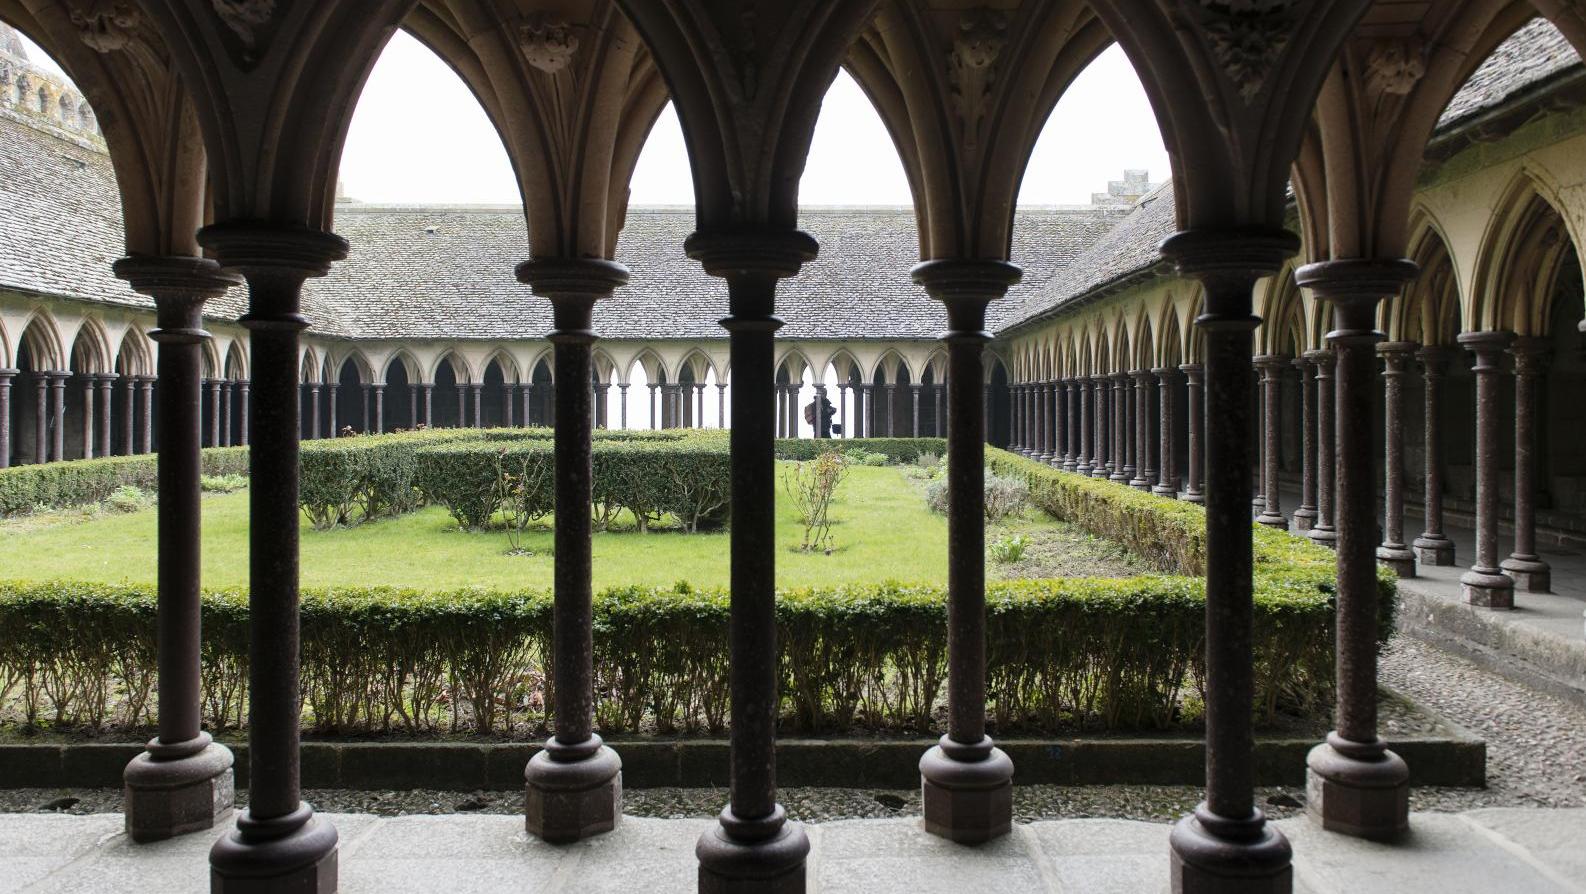 La restauration du cloître de l’abbaye du Mont-Saint-Michel donne lieu à une souscription,... Le crowdfunding : mode ou (r)évolution ?